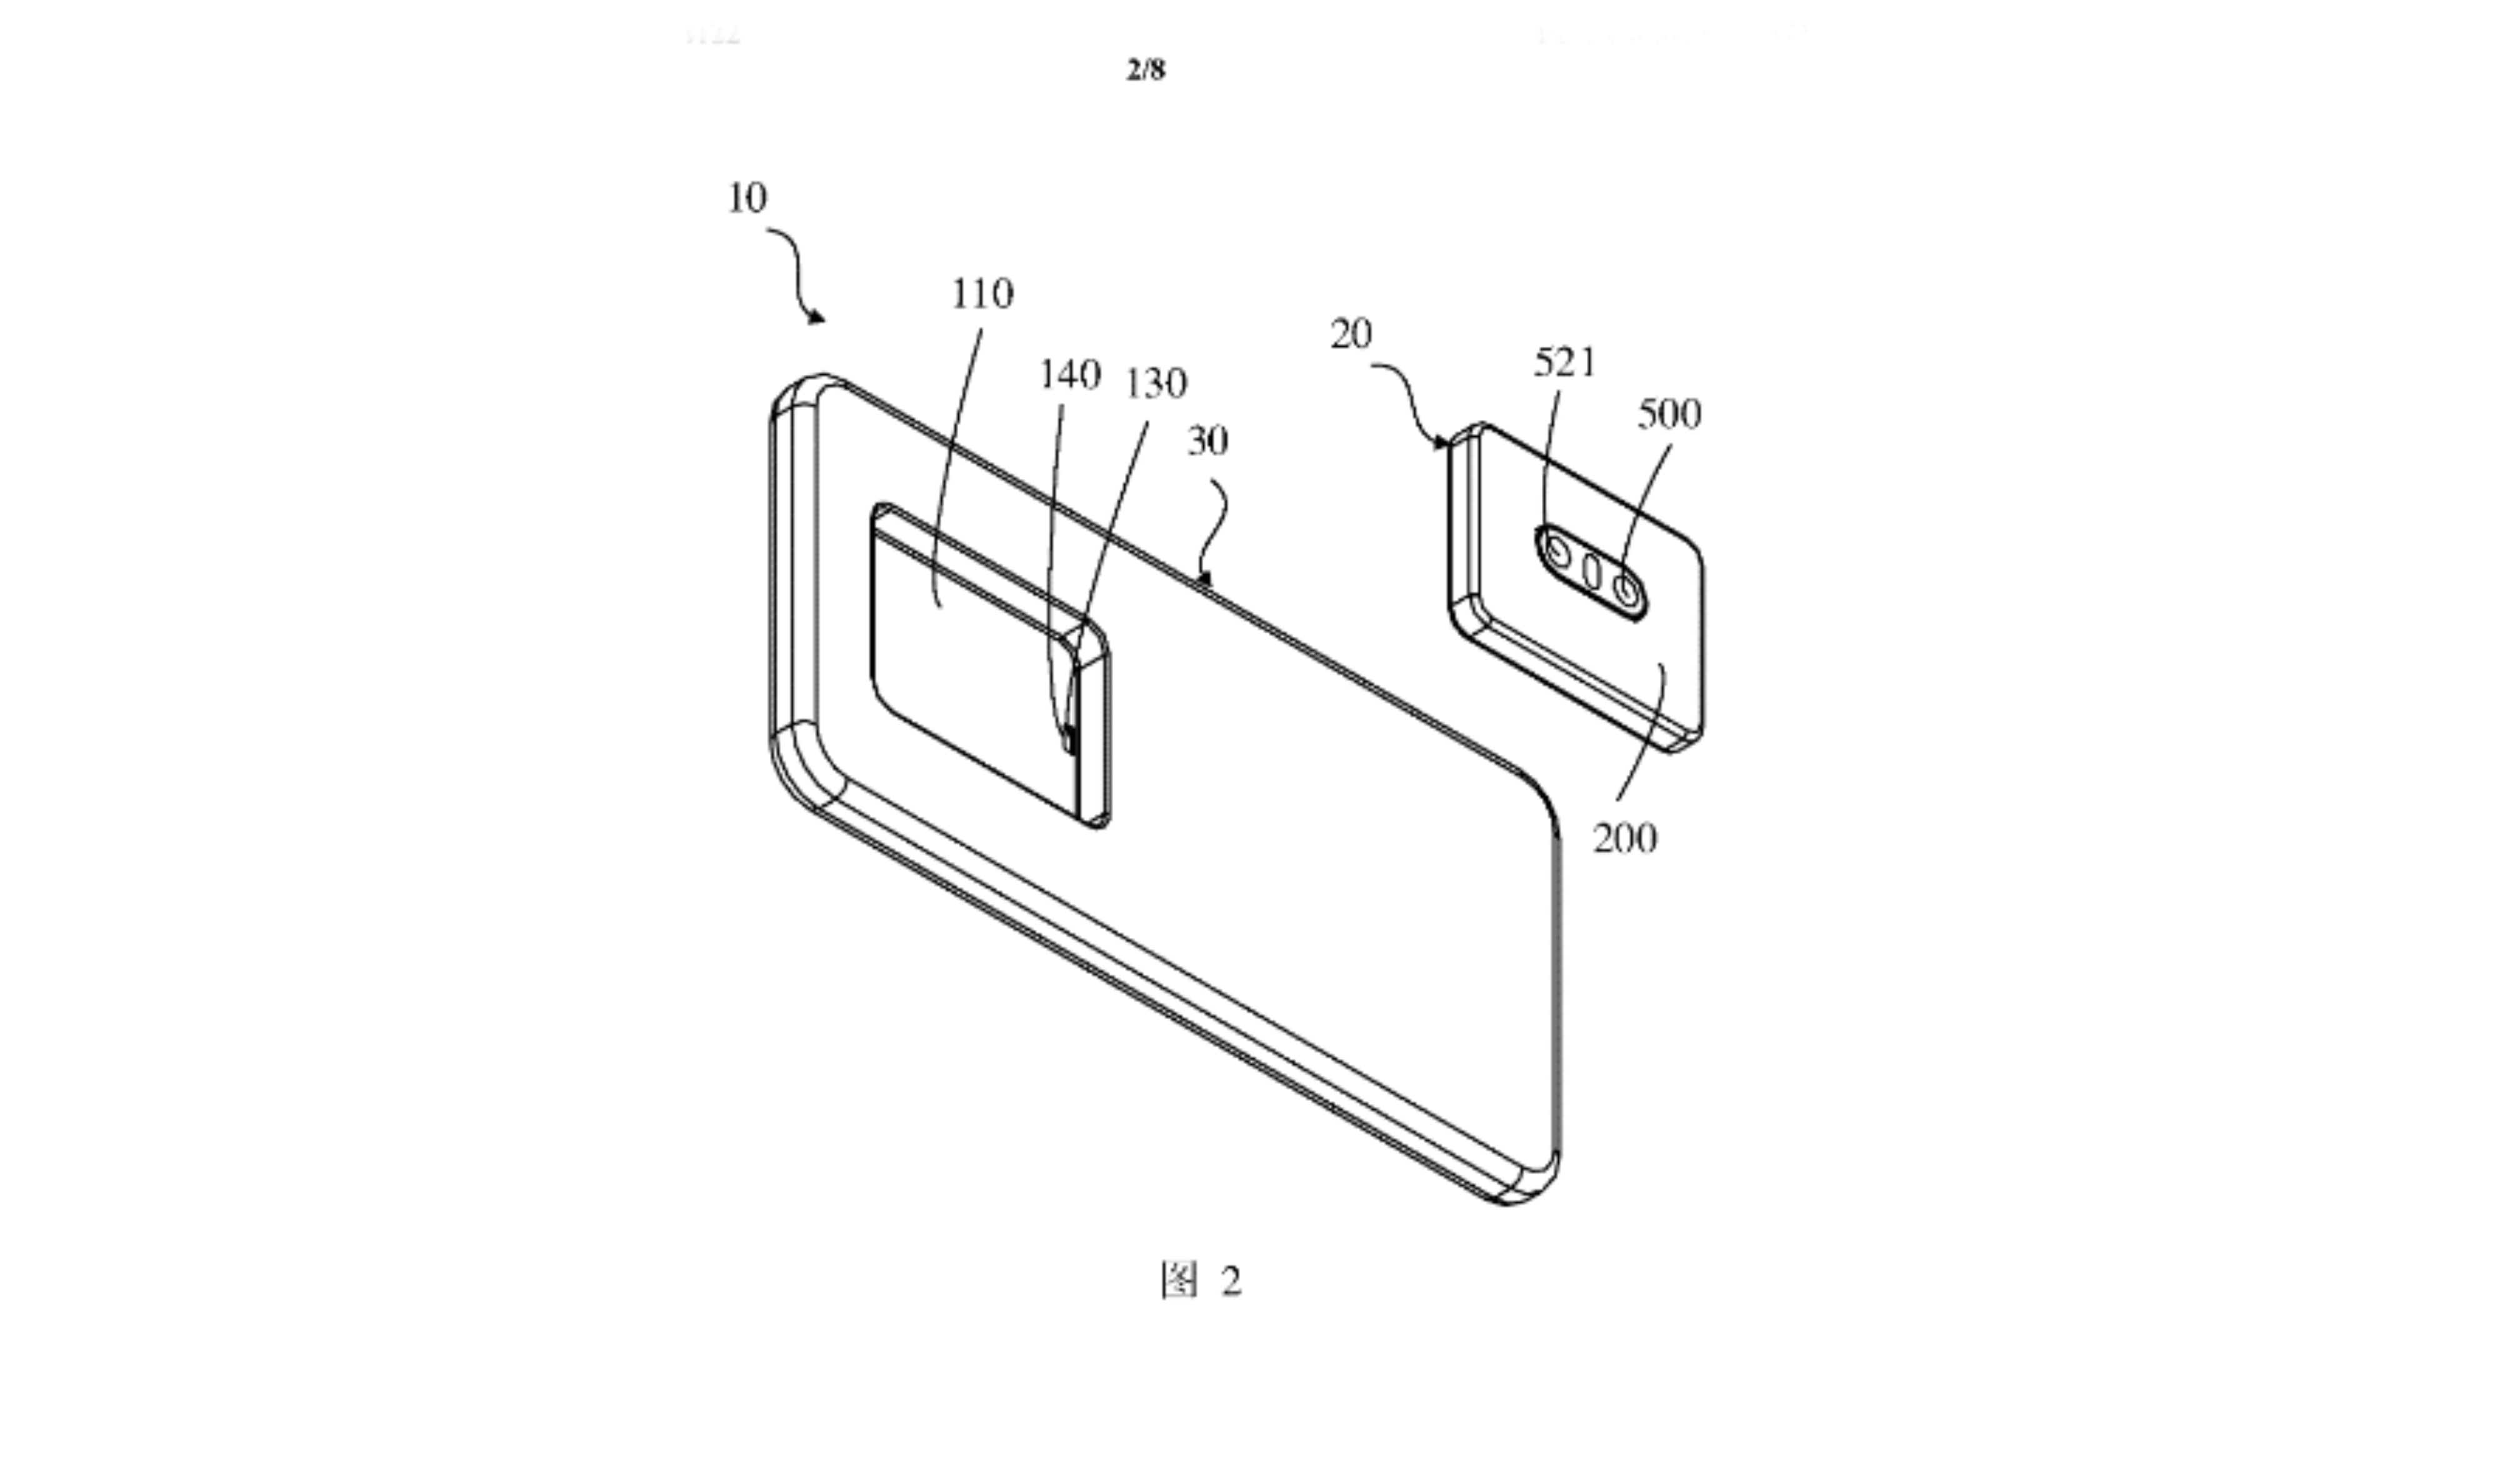 OPPO Detachable Camera Module Smartphone Design Patent Featured